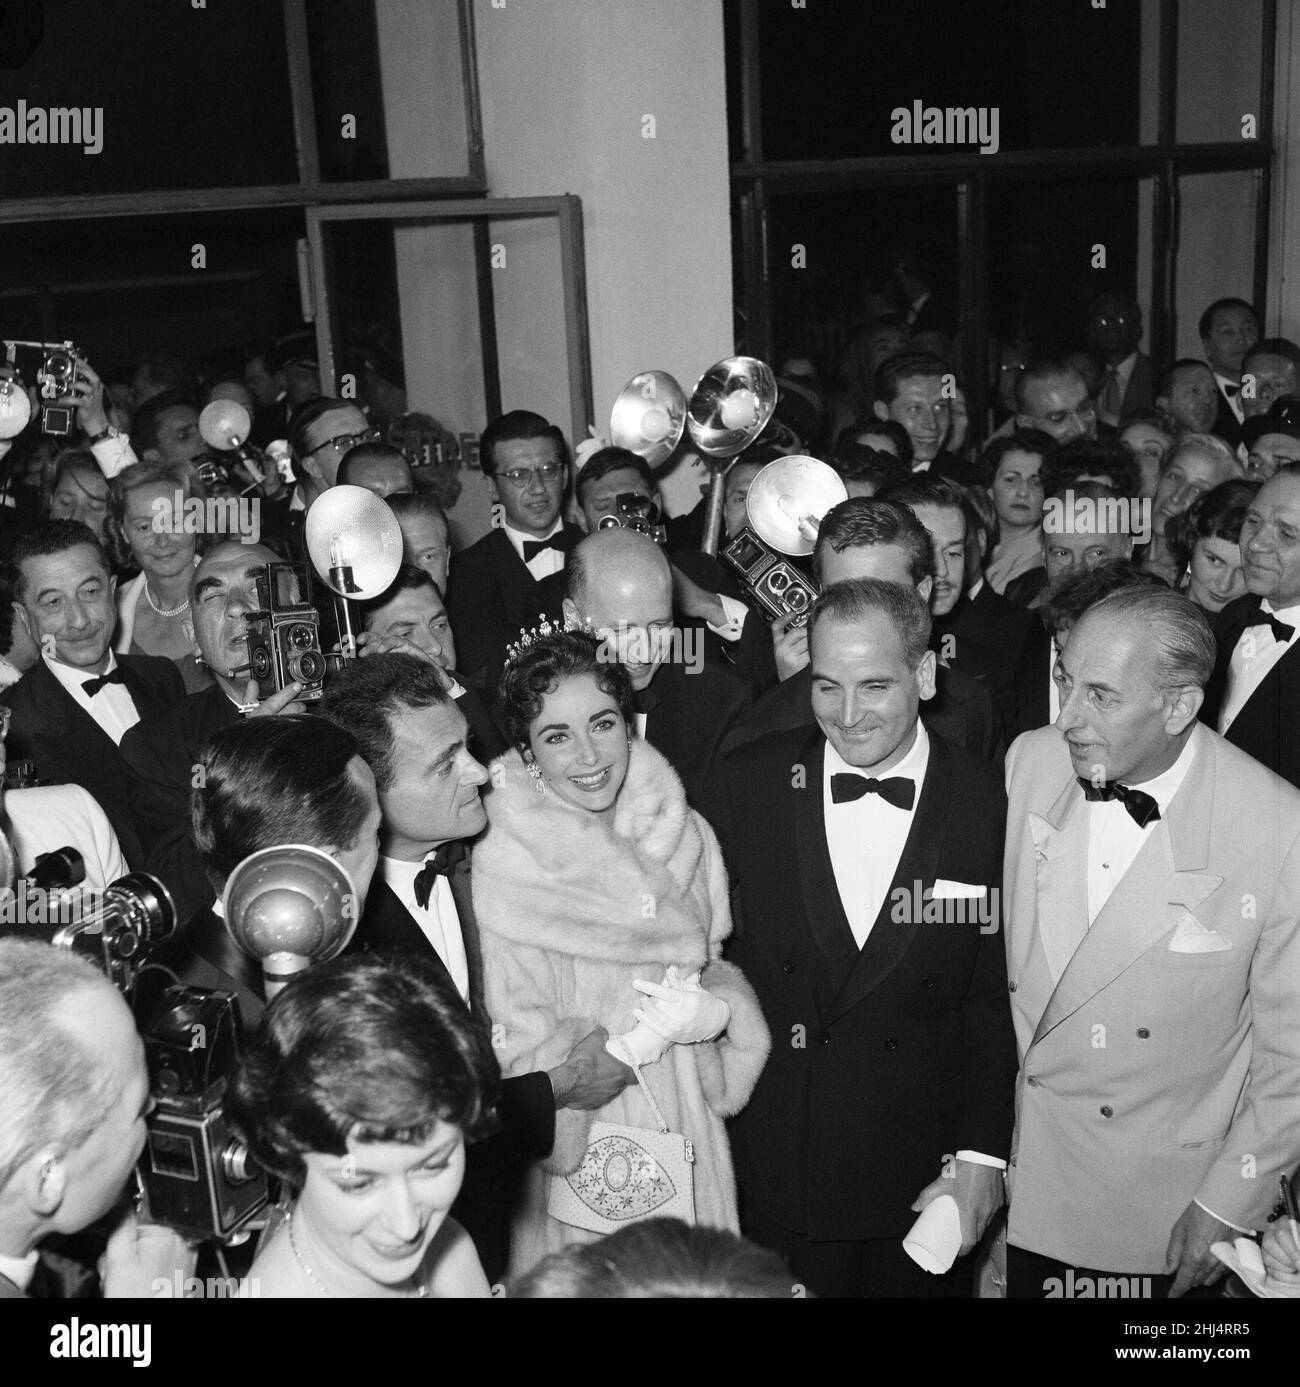 Elizabeth Taylor und ihr Mann, der Filmproduzent Mike Todd, im Bild bei der Eröffnungsnacht der Filmfestspiele von Cannes 1957, wo er in 80 Tagen für neuen Film rund um die Welt wirbt. Cannes, Frankreich, 6th. Mai 1957. Stockfoto